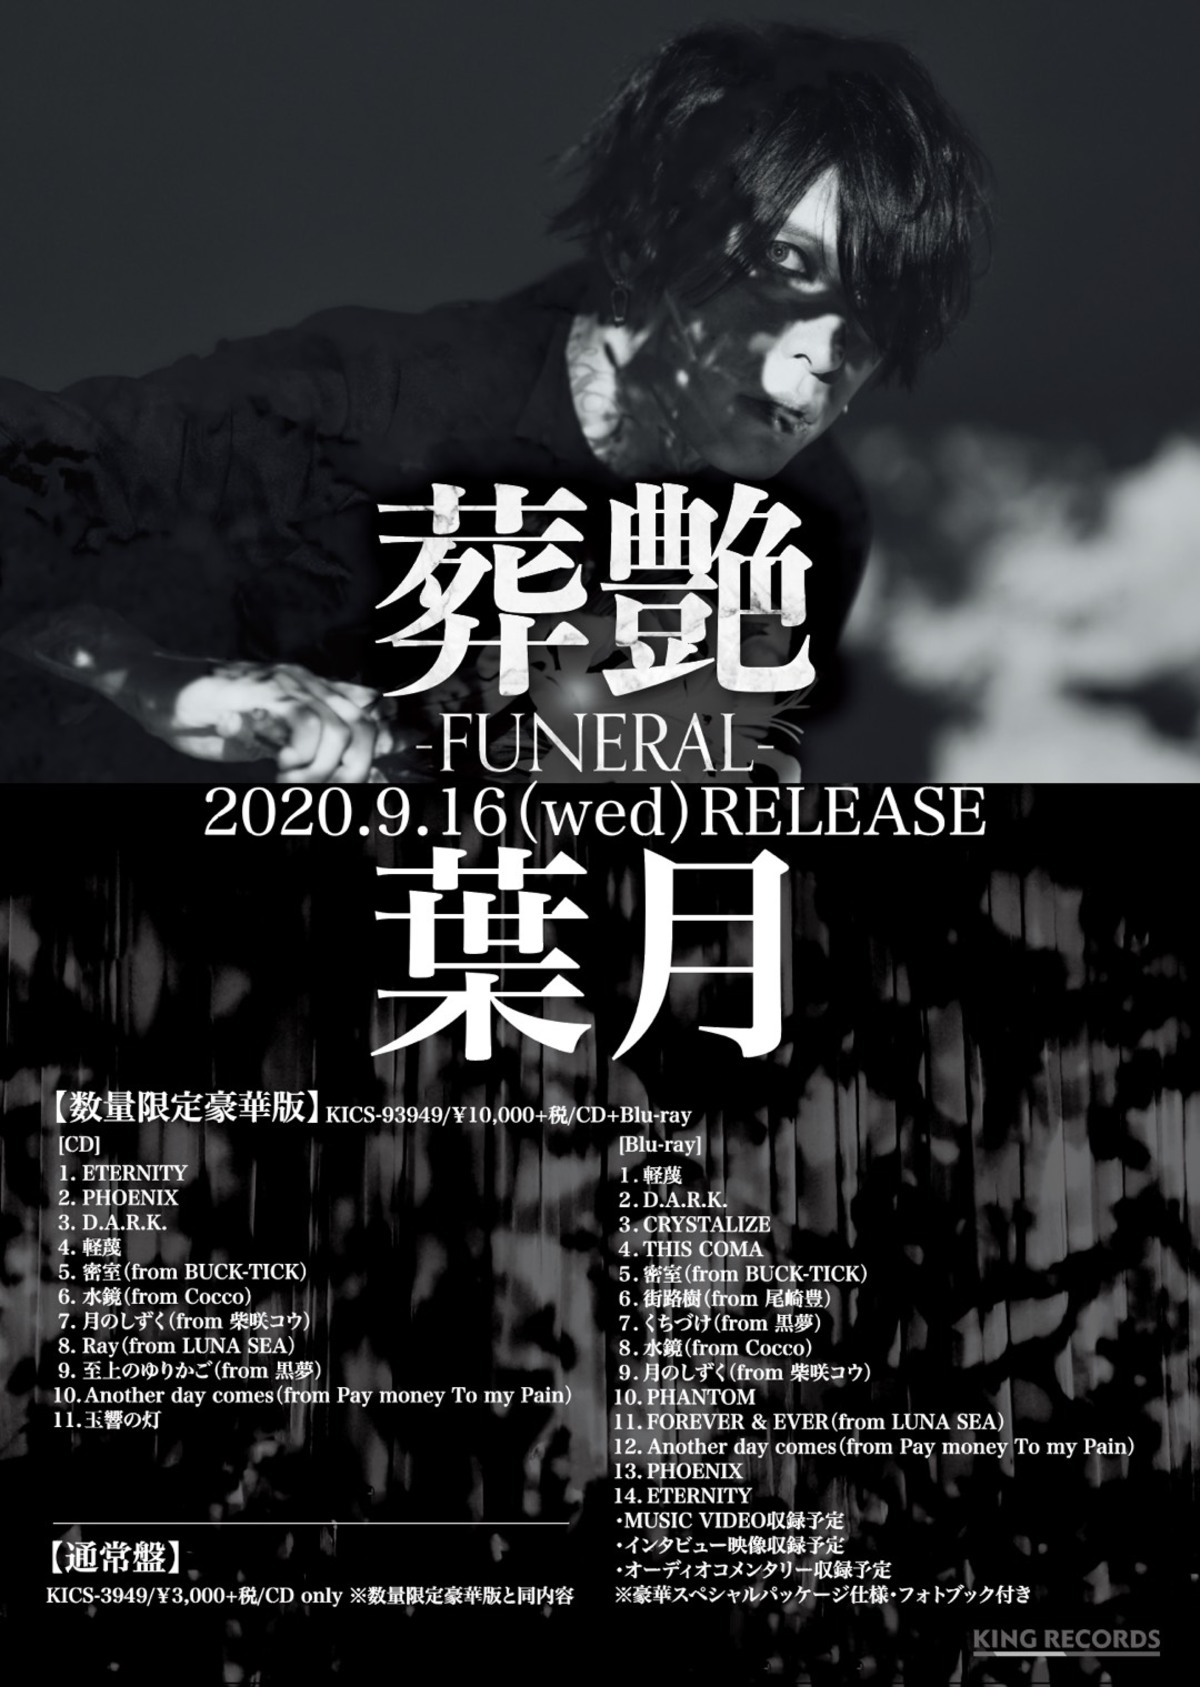 いラインアップ lynch. 葉月 HAZUKI 蓮華鏡 初回限定版CD+ブルーレイ 